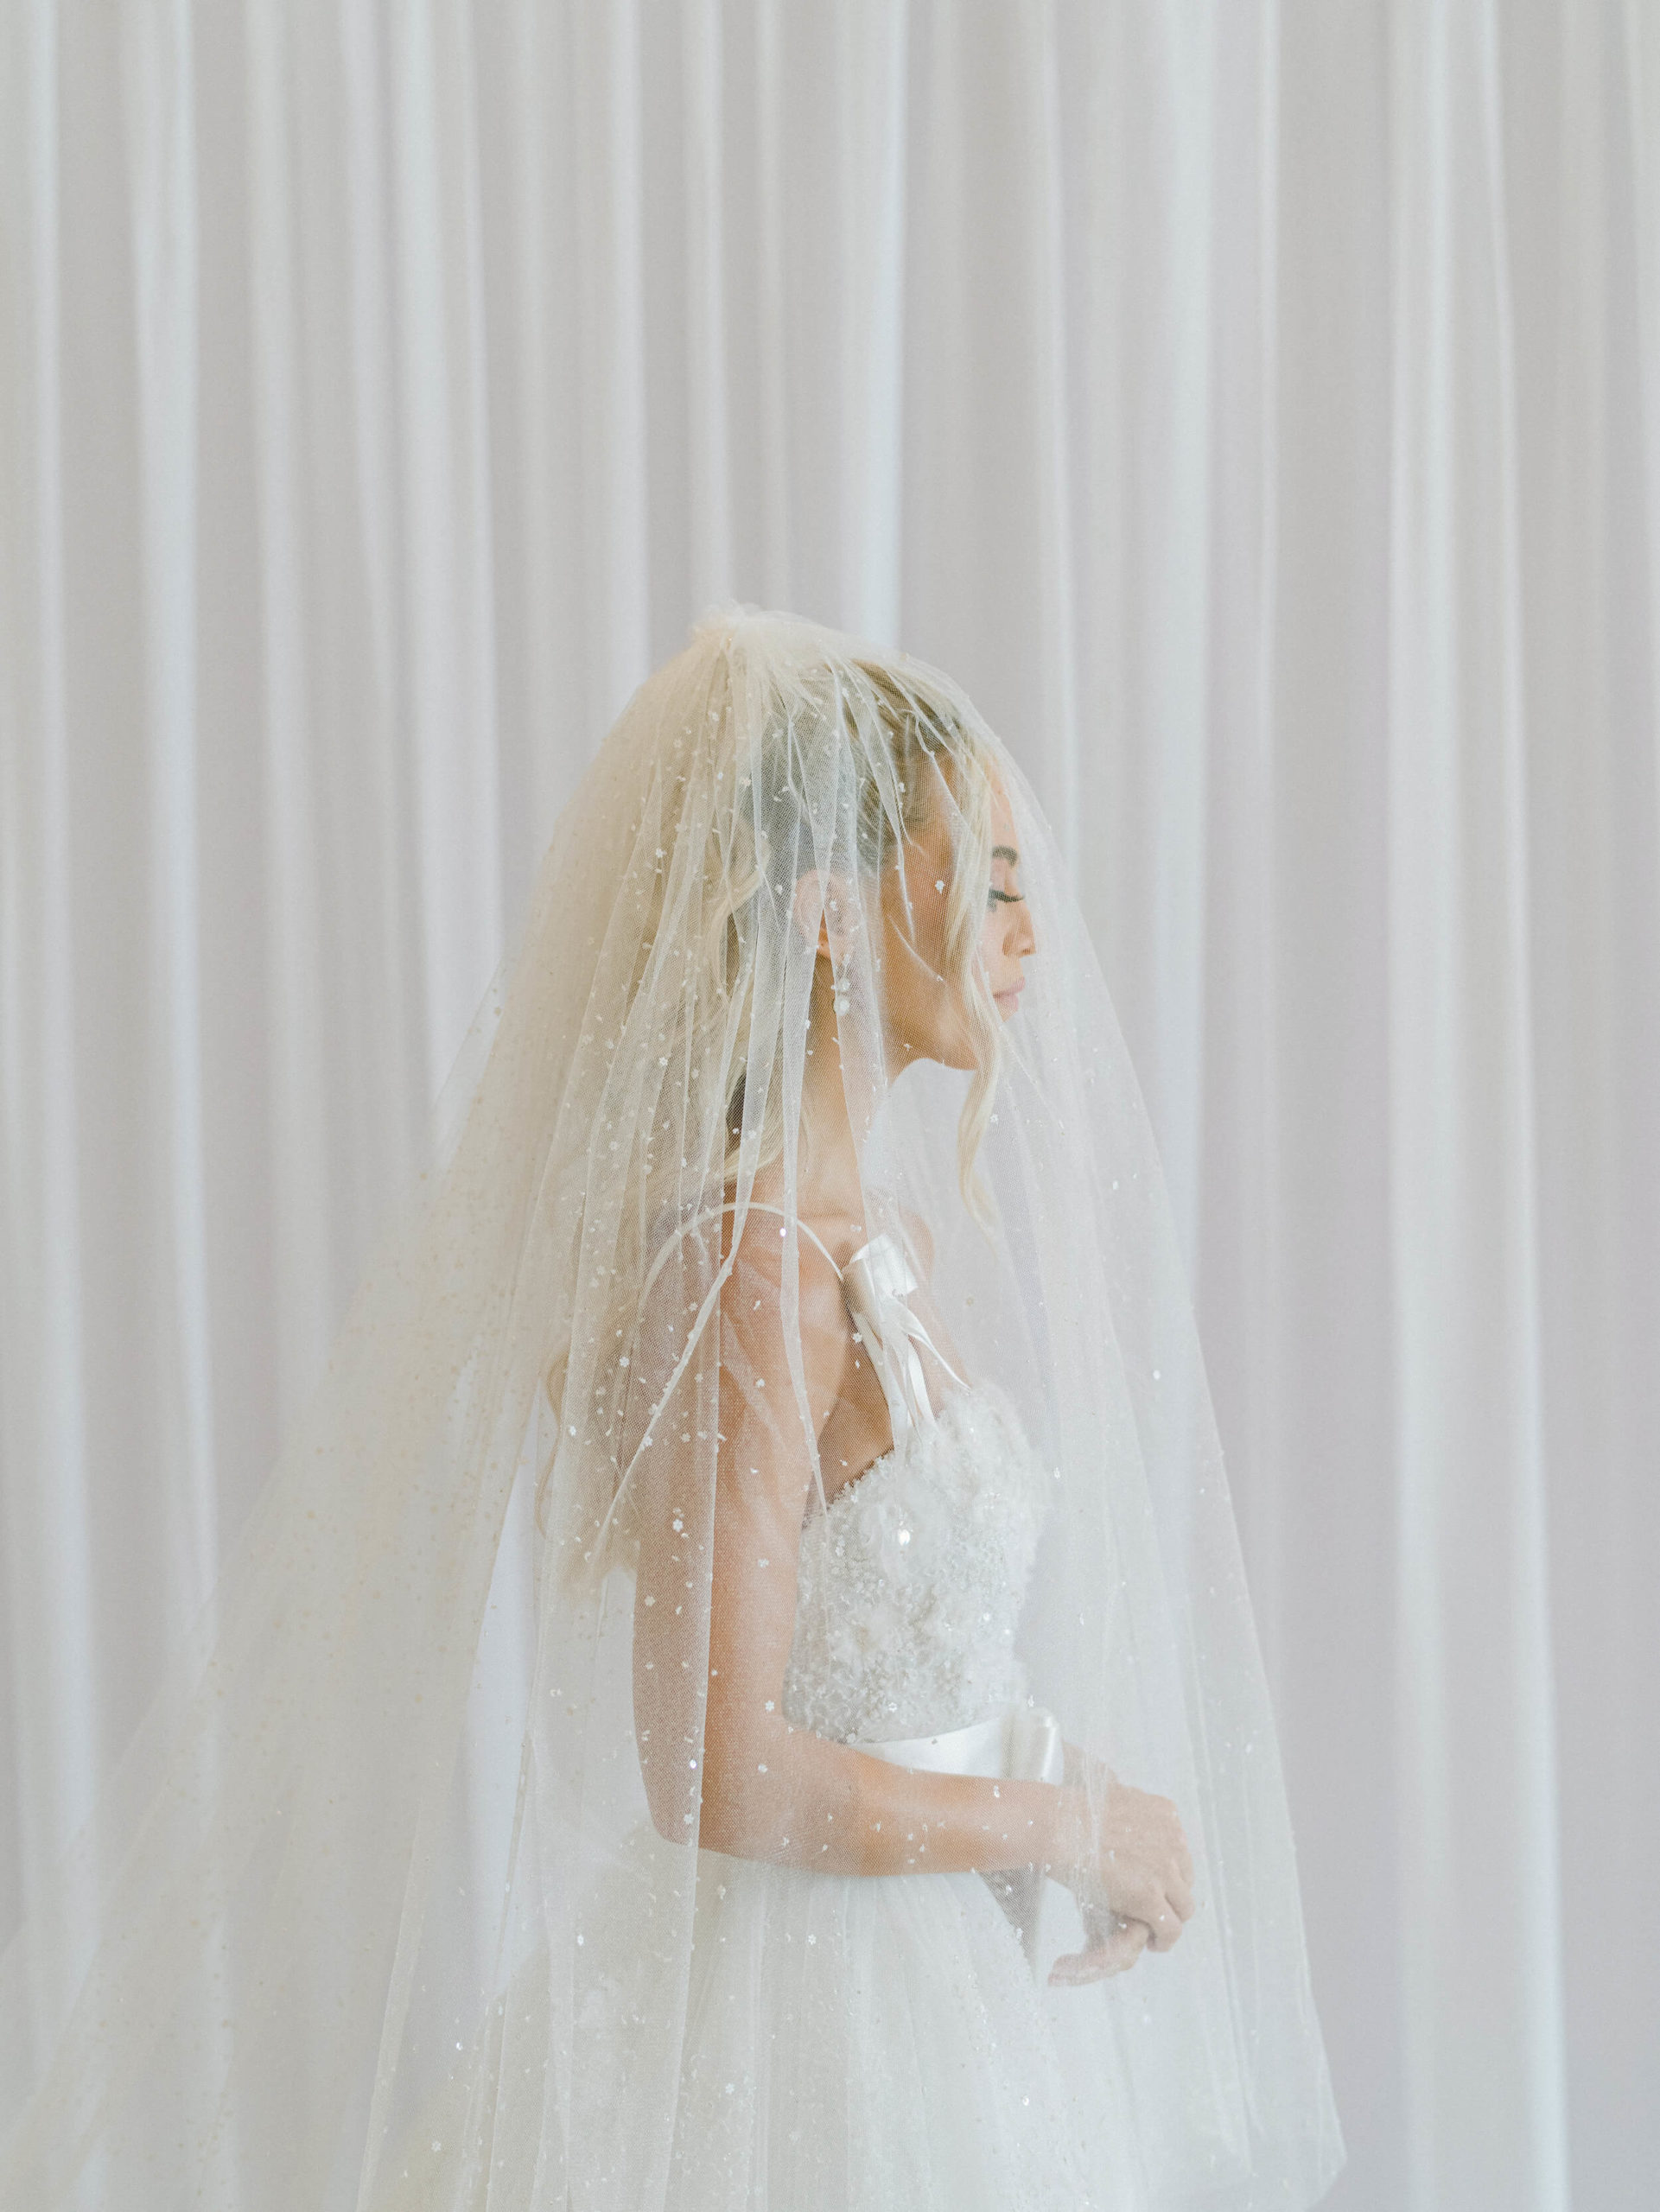 Las Vegas bride in Chanel wedding gown